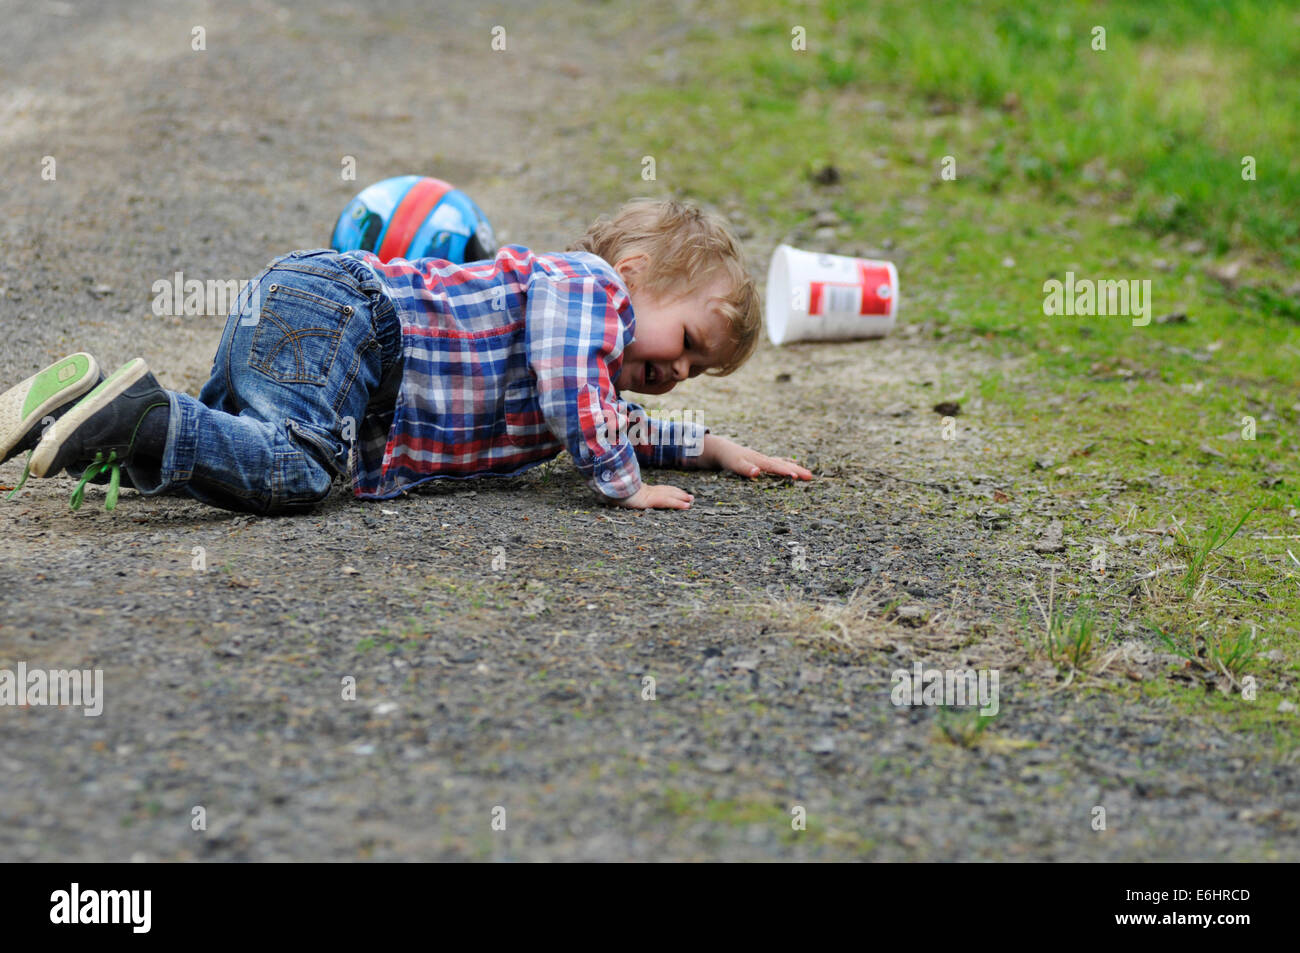 Un petit garçon, pleurer alors qu'il trébuche sur Banque D'Images